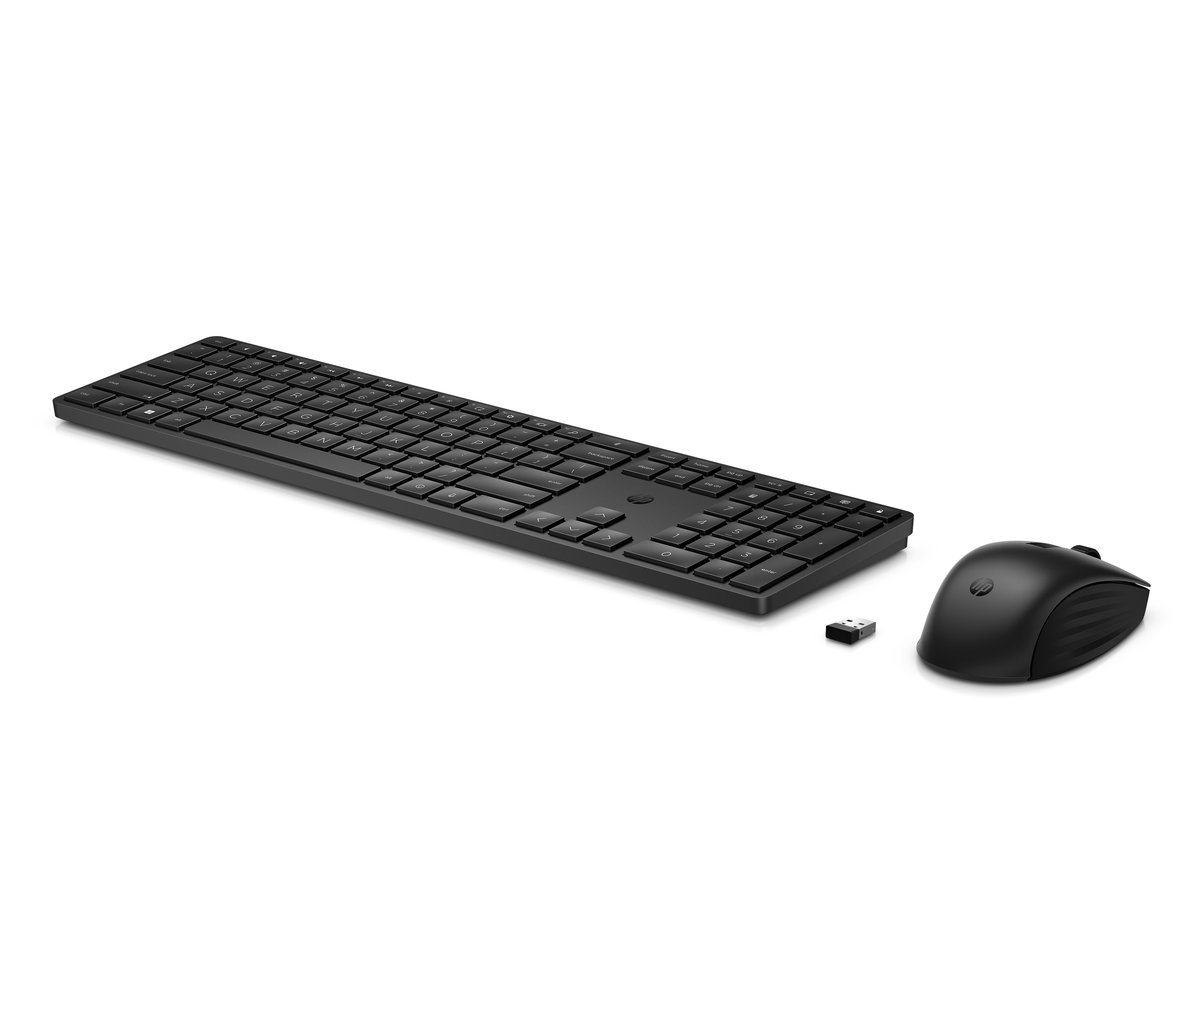 Bezdrátová klávesnice a myš HP 650 - černá (4R013AA)